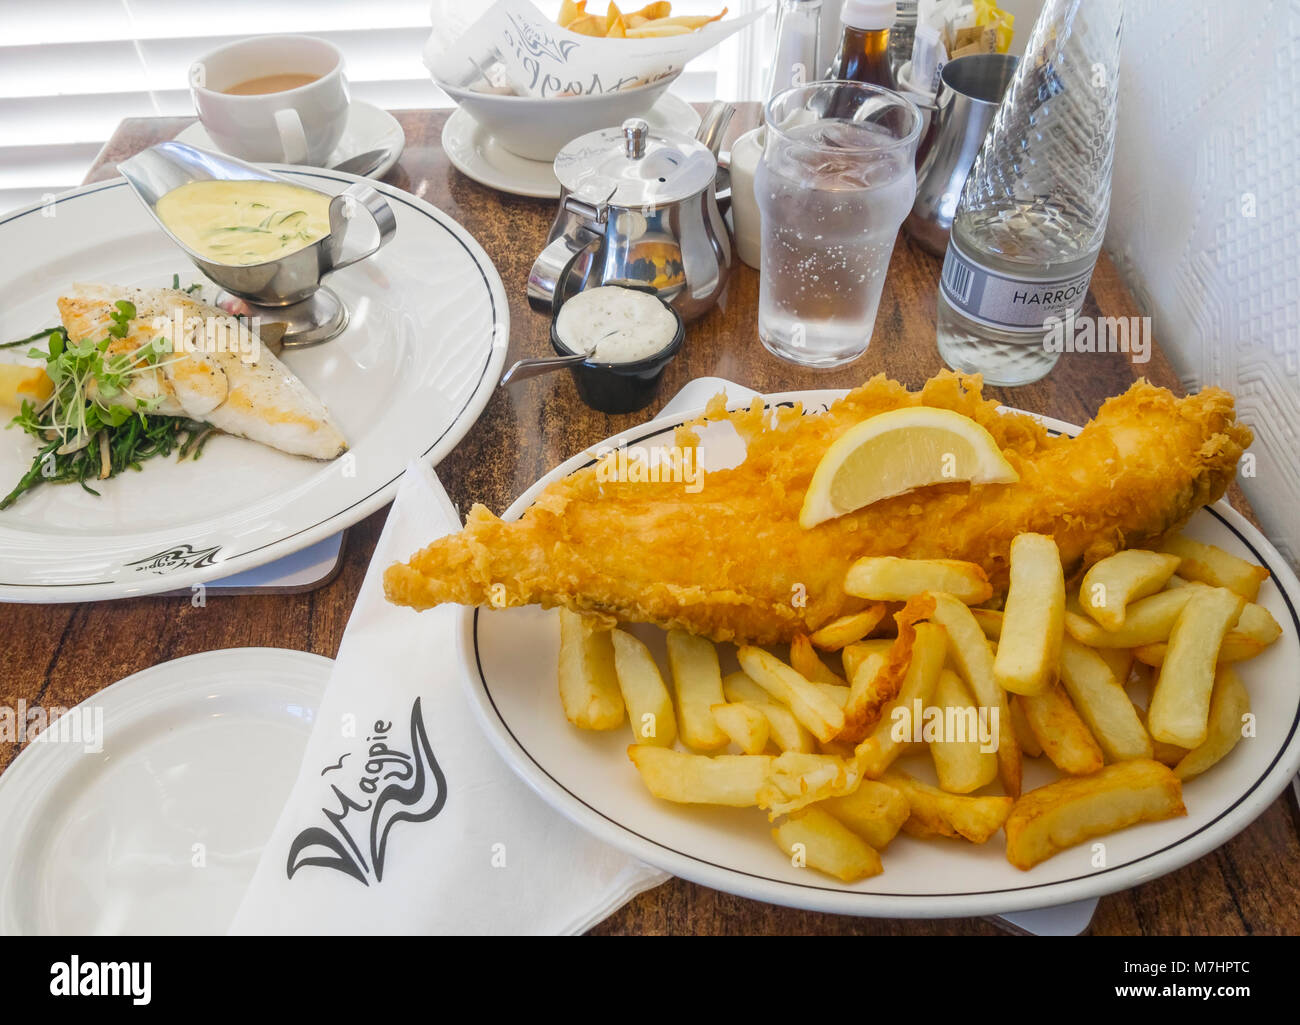 Le déjeuner pour deux au célèbre Café Magpie à Whitby, North Yorkshire Angleterre Royaume-uni un aiglefin frit et frites et un merlu avec salicornes et sauce Béarnaise Banque D'Images